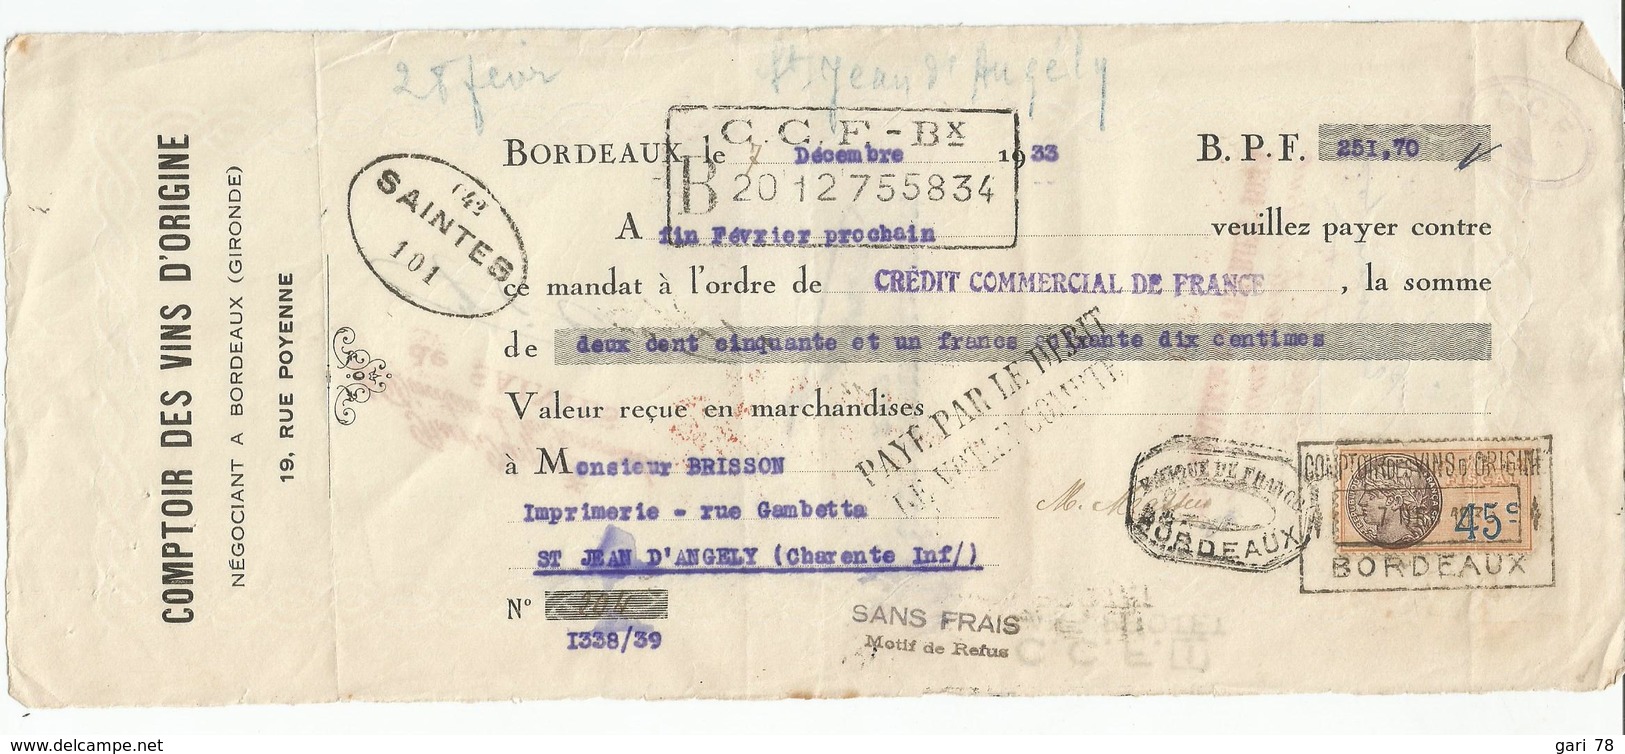 Lettre De Change Du 20 Octobre 1931 De Pierre KROMAN  + Timbre Fiscal - Bills Of Exchange